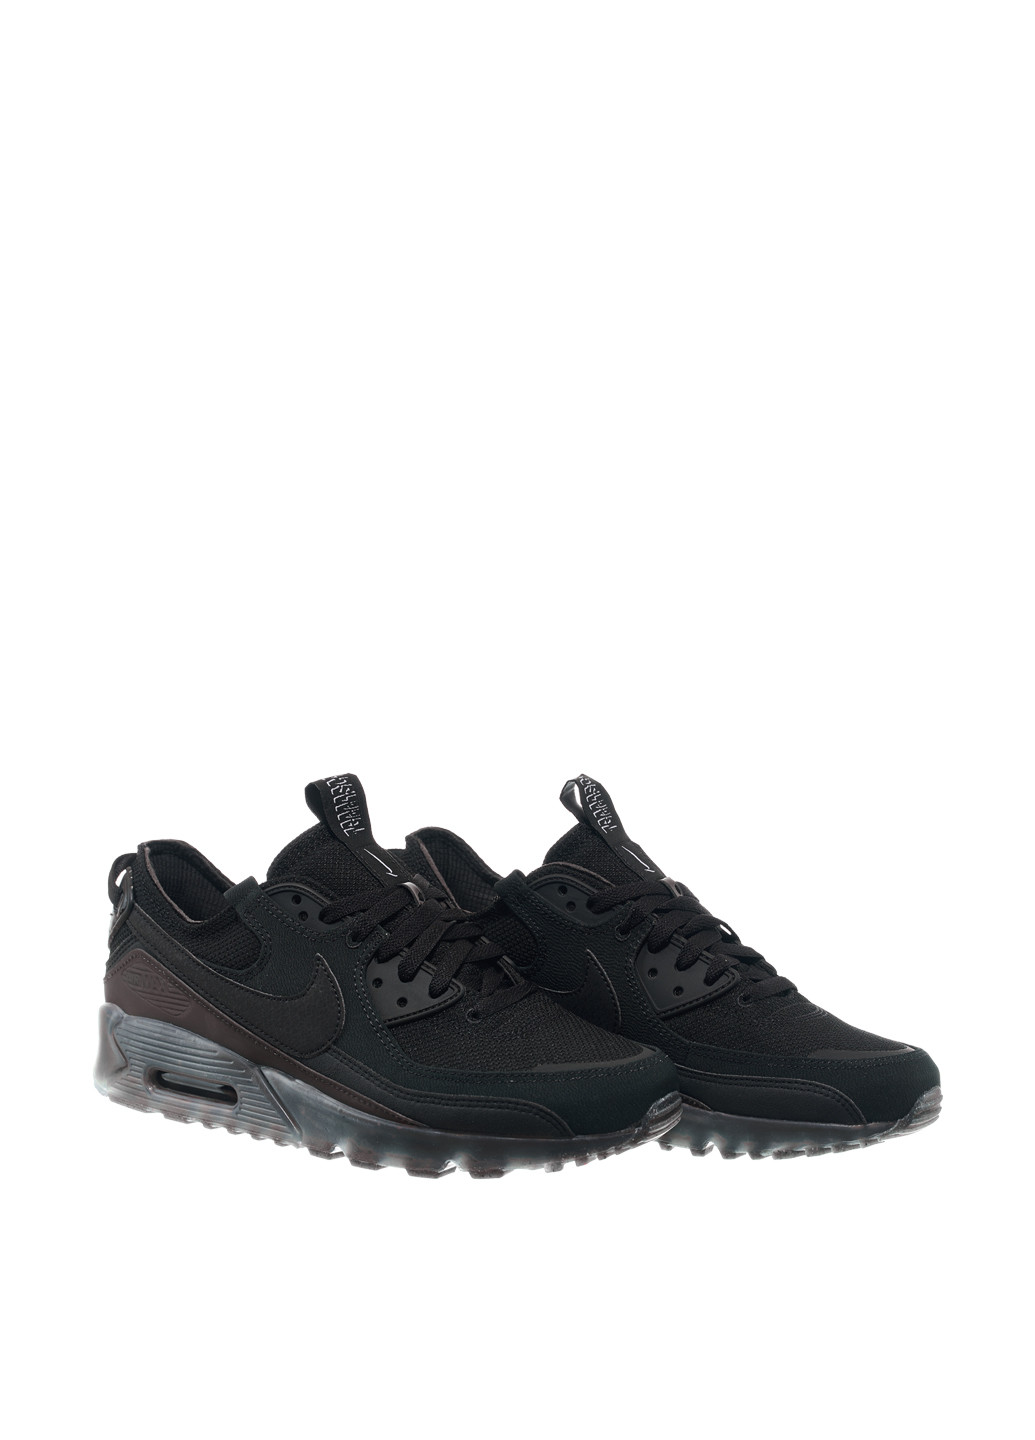 Черные всесезонные кроссовки dq3987-002_2024 Nike Air Max Terrascape 90